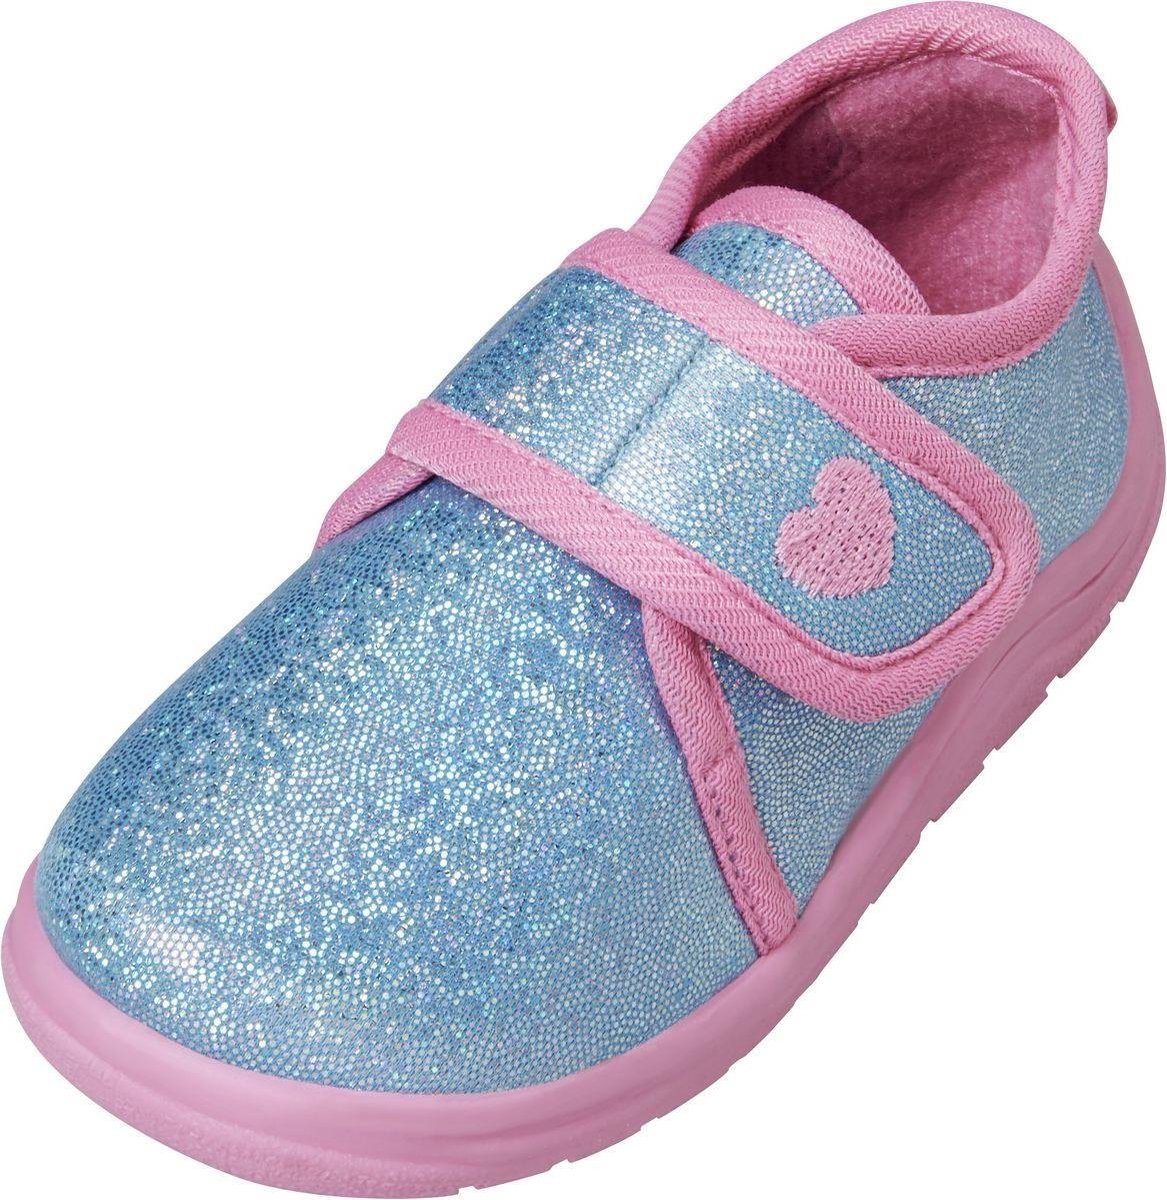 Playshoes Babyschoenen Meisjes Textiel Turquoise roze